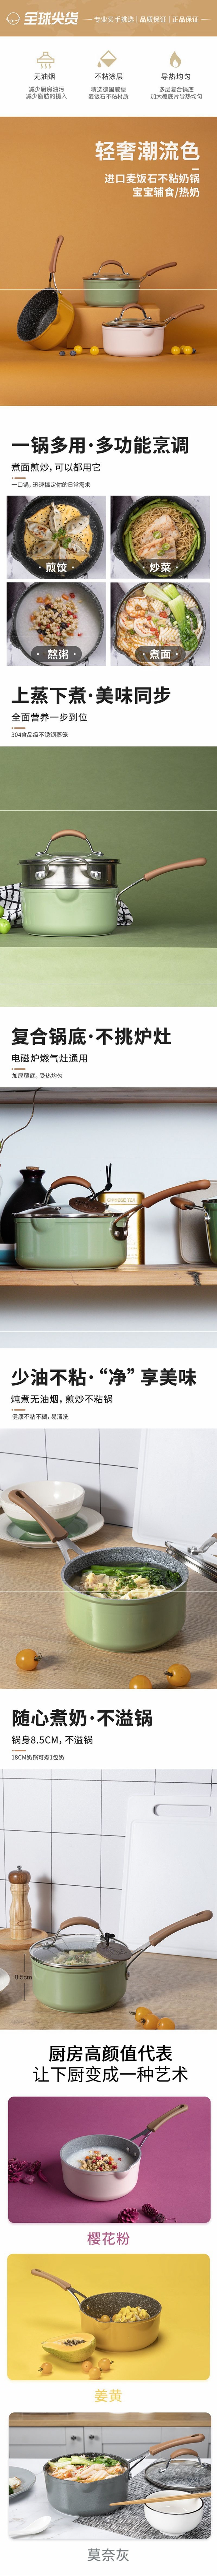 网易严选多色可选多功能锅 一锅多用轻松烹饪 奶锅 (粉色)18cm+蒸笼